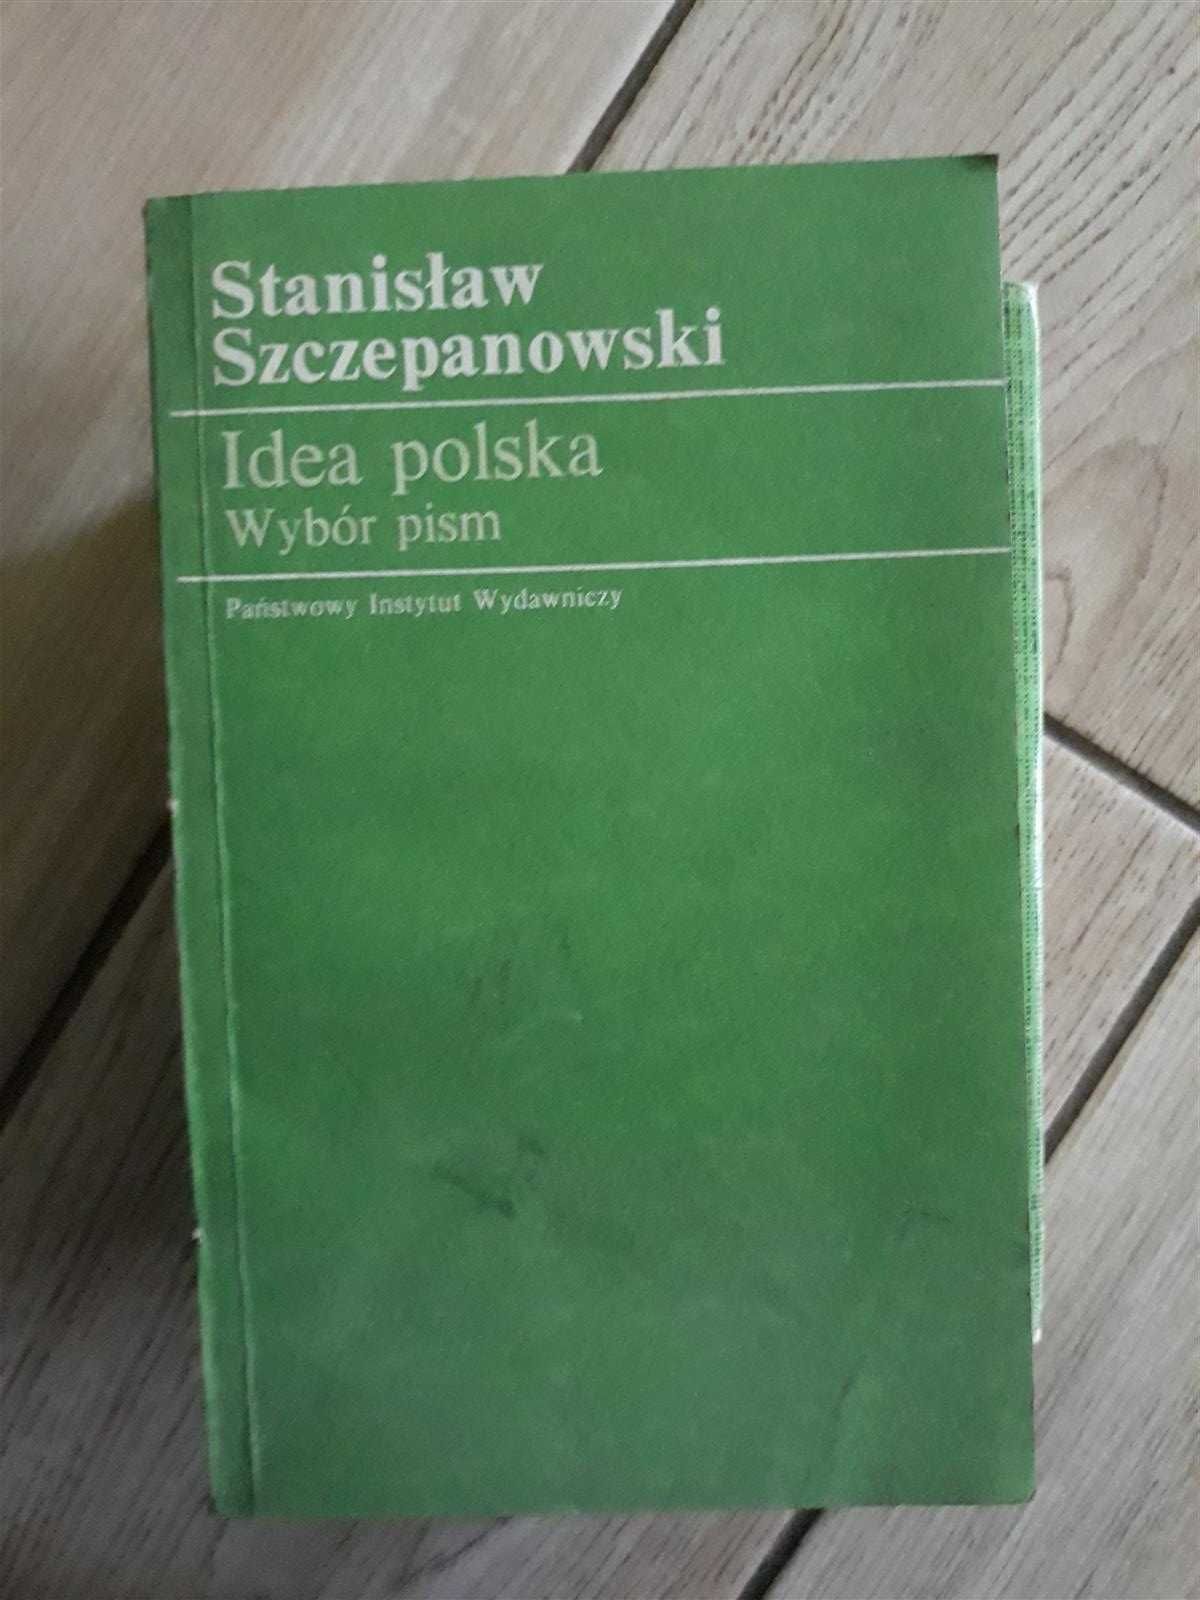 Idea polska - Stanisław Szczepanowski